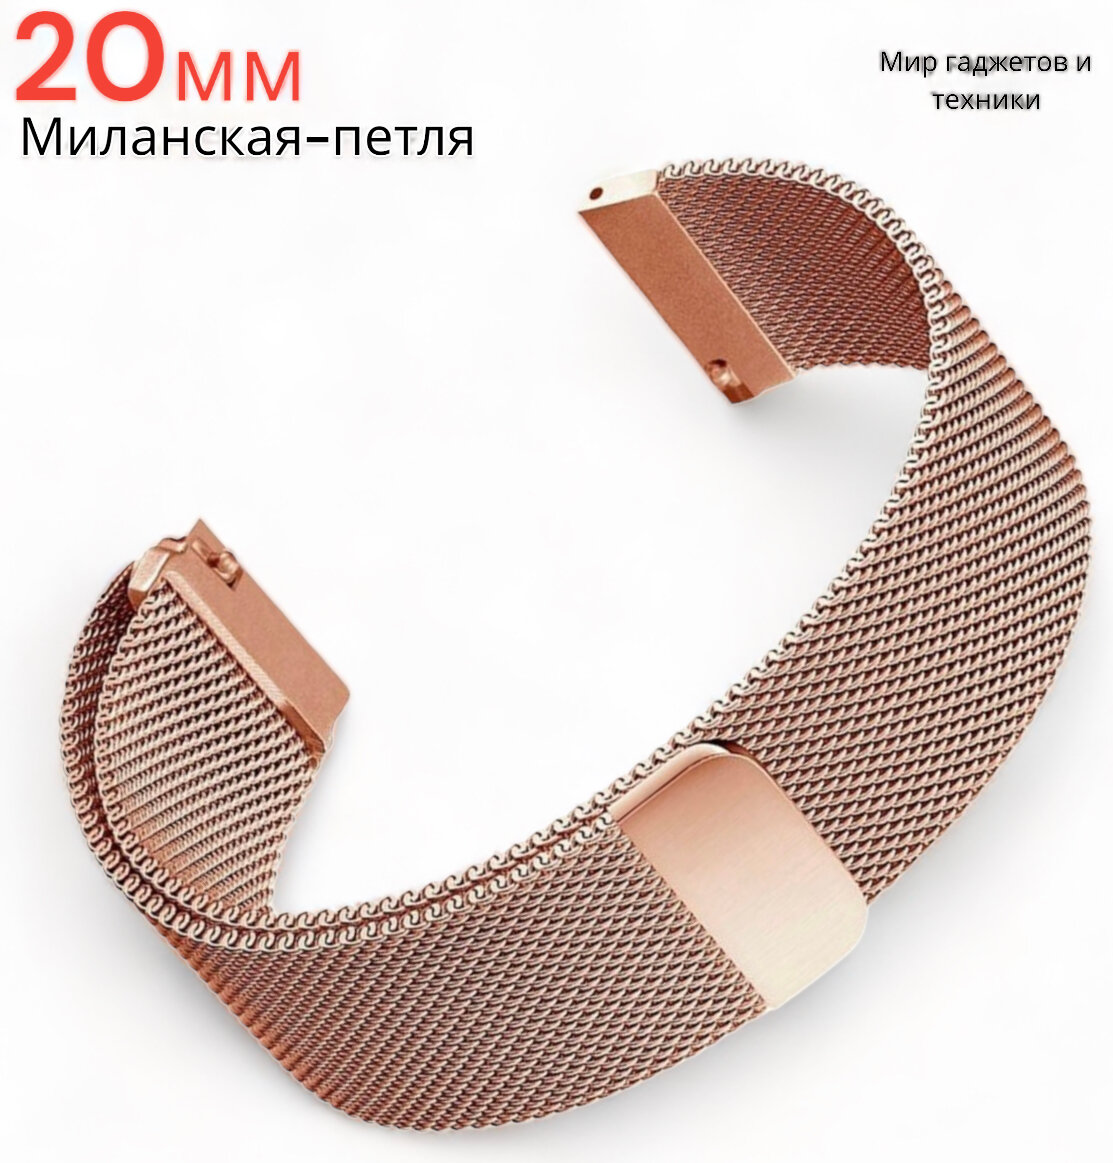 Металлический магнитный ремешок 20мм для Amazfit Bip /GTR /GTS/ Galaxy Watch /Gear /Huawei /Honor миланская петля /золото